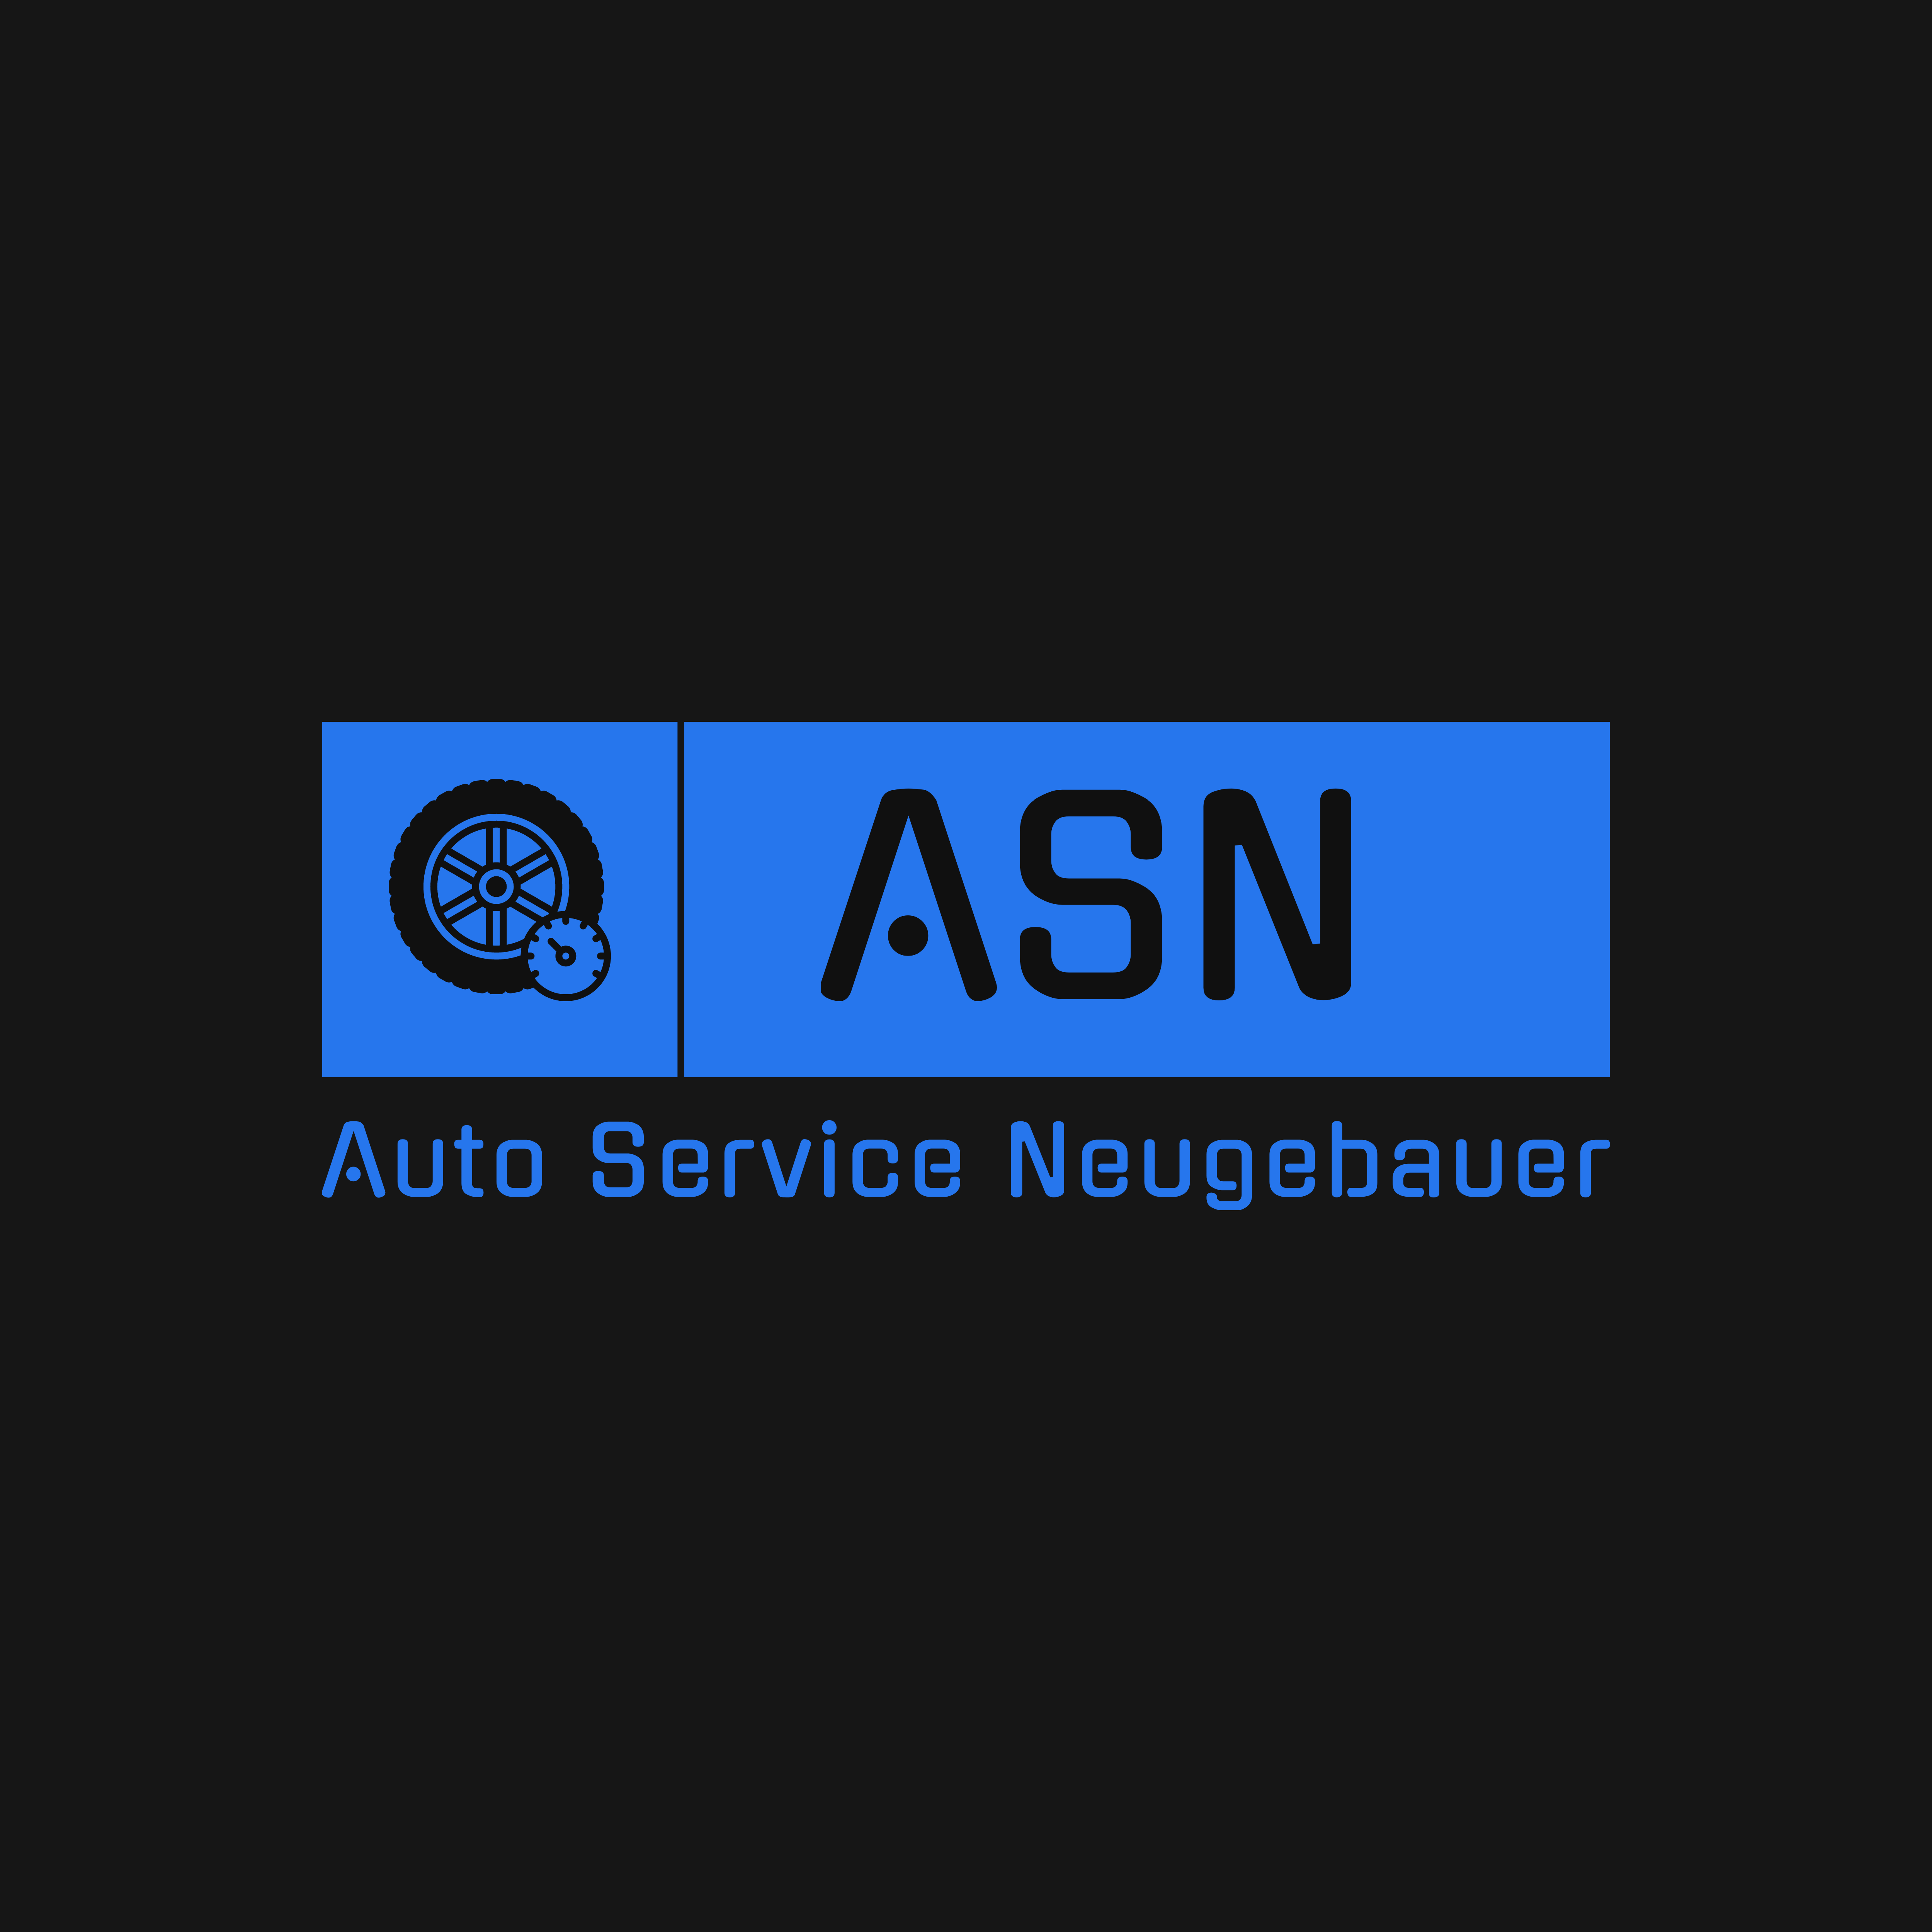 ASN Auto Service Neugebauer